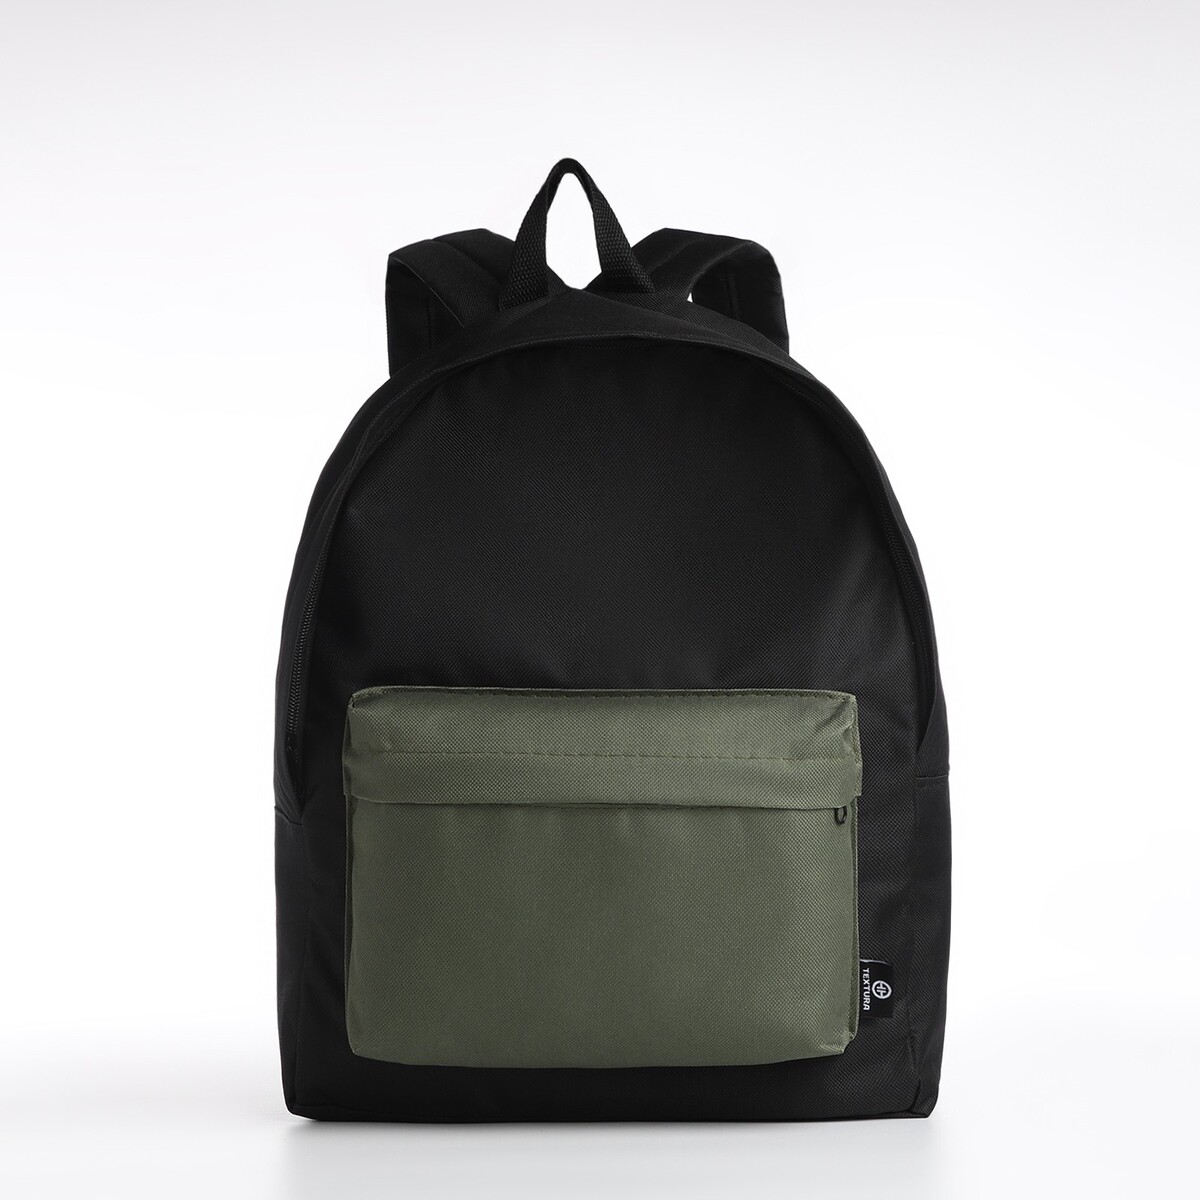 Спортивный рюкзак textura, 20 литров, цвет черный/хаки спортивный рюкзак из текстиля на молнии textura 20 литров хаки